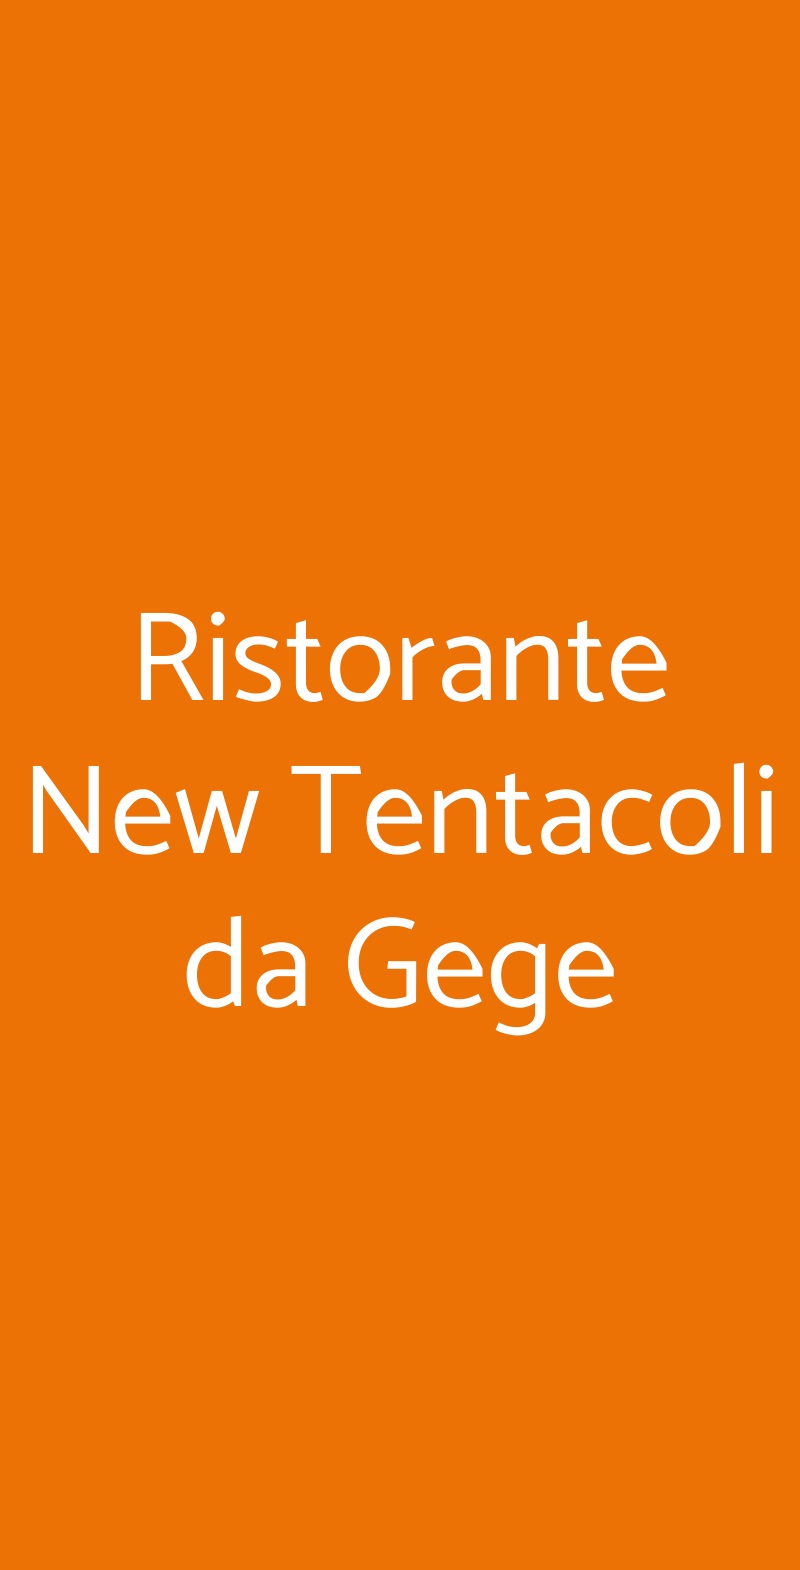 Ristorante New Tentacoli da Gege Milano menù 1 pagina